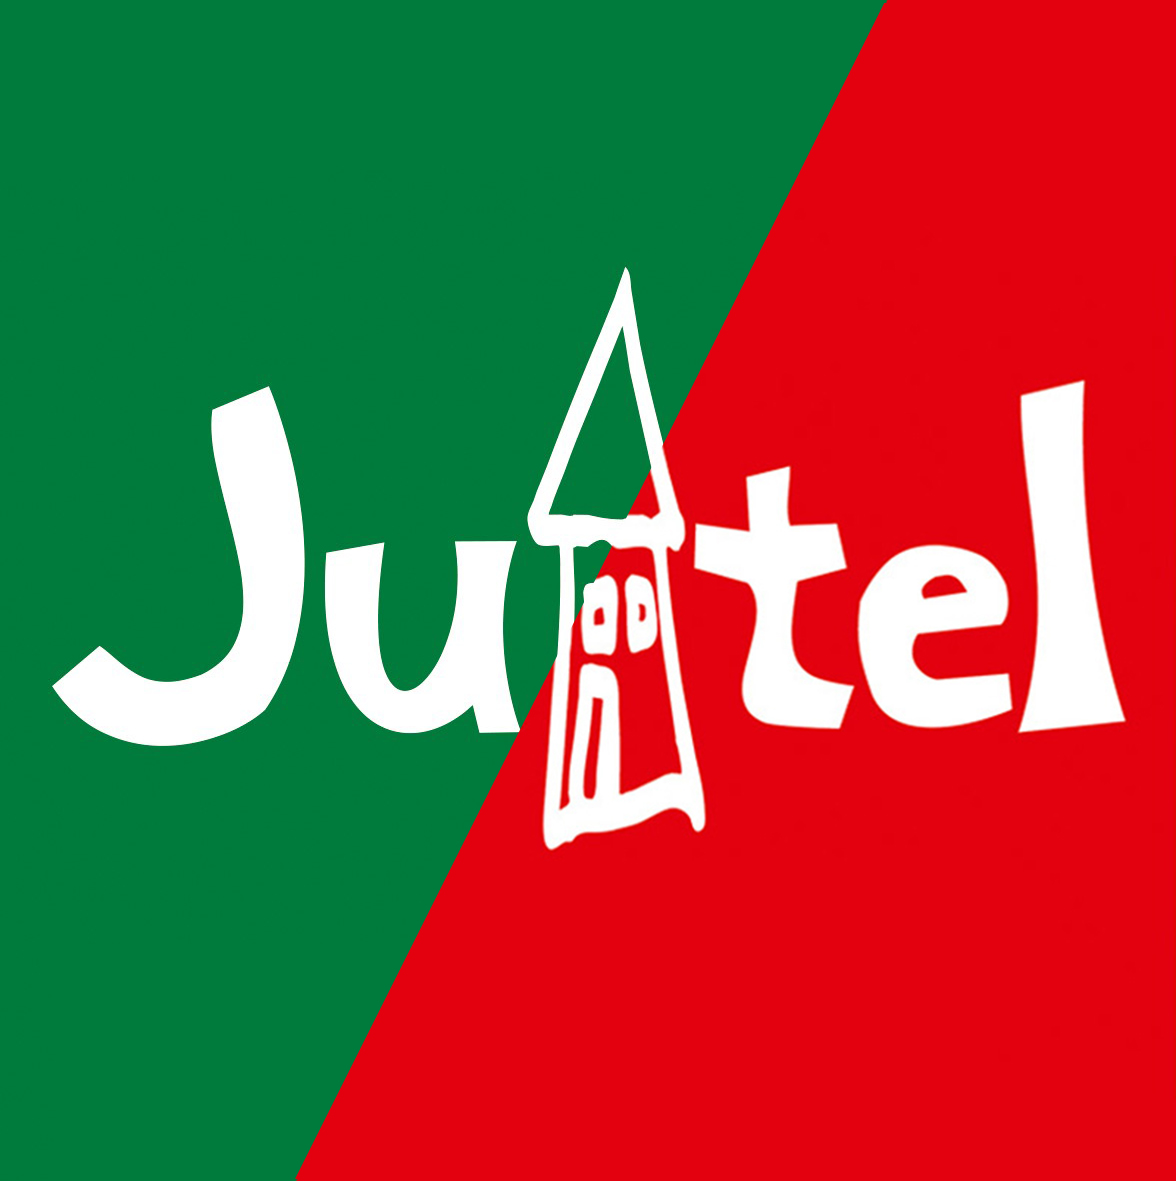 Jutel